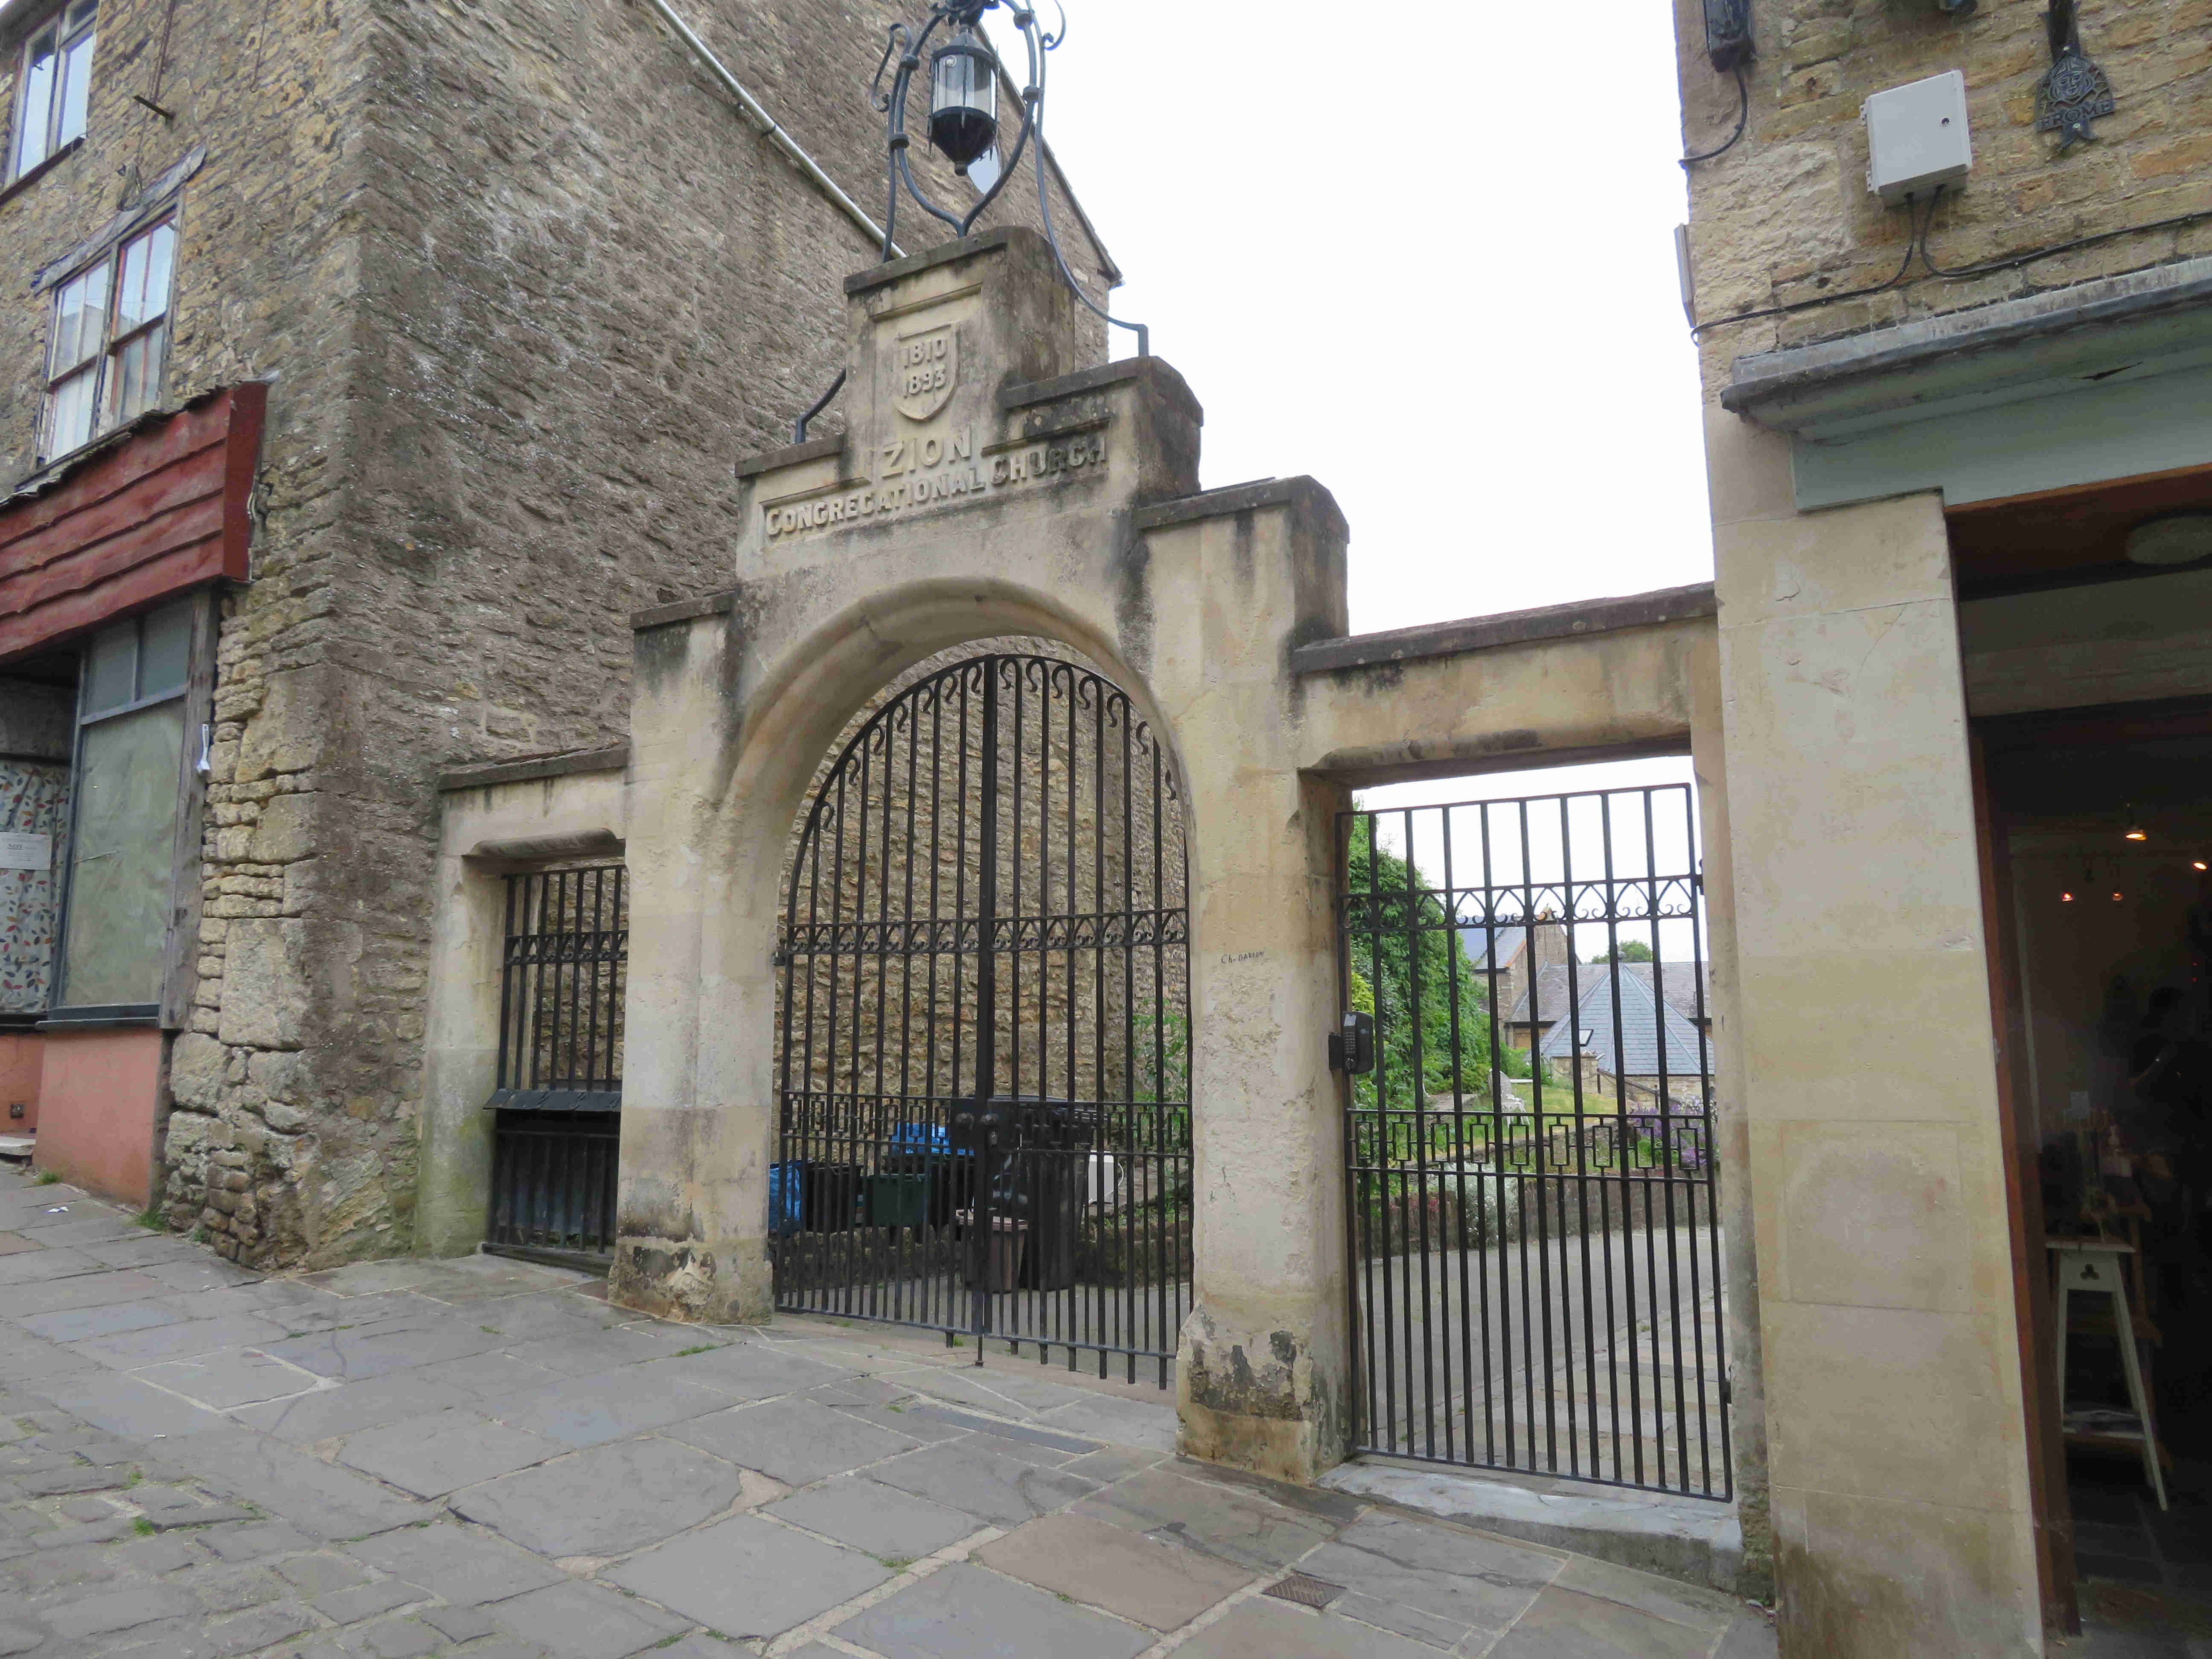 Zion Chapel entrance